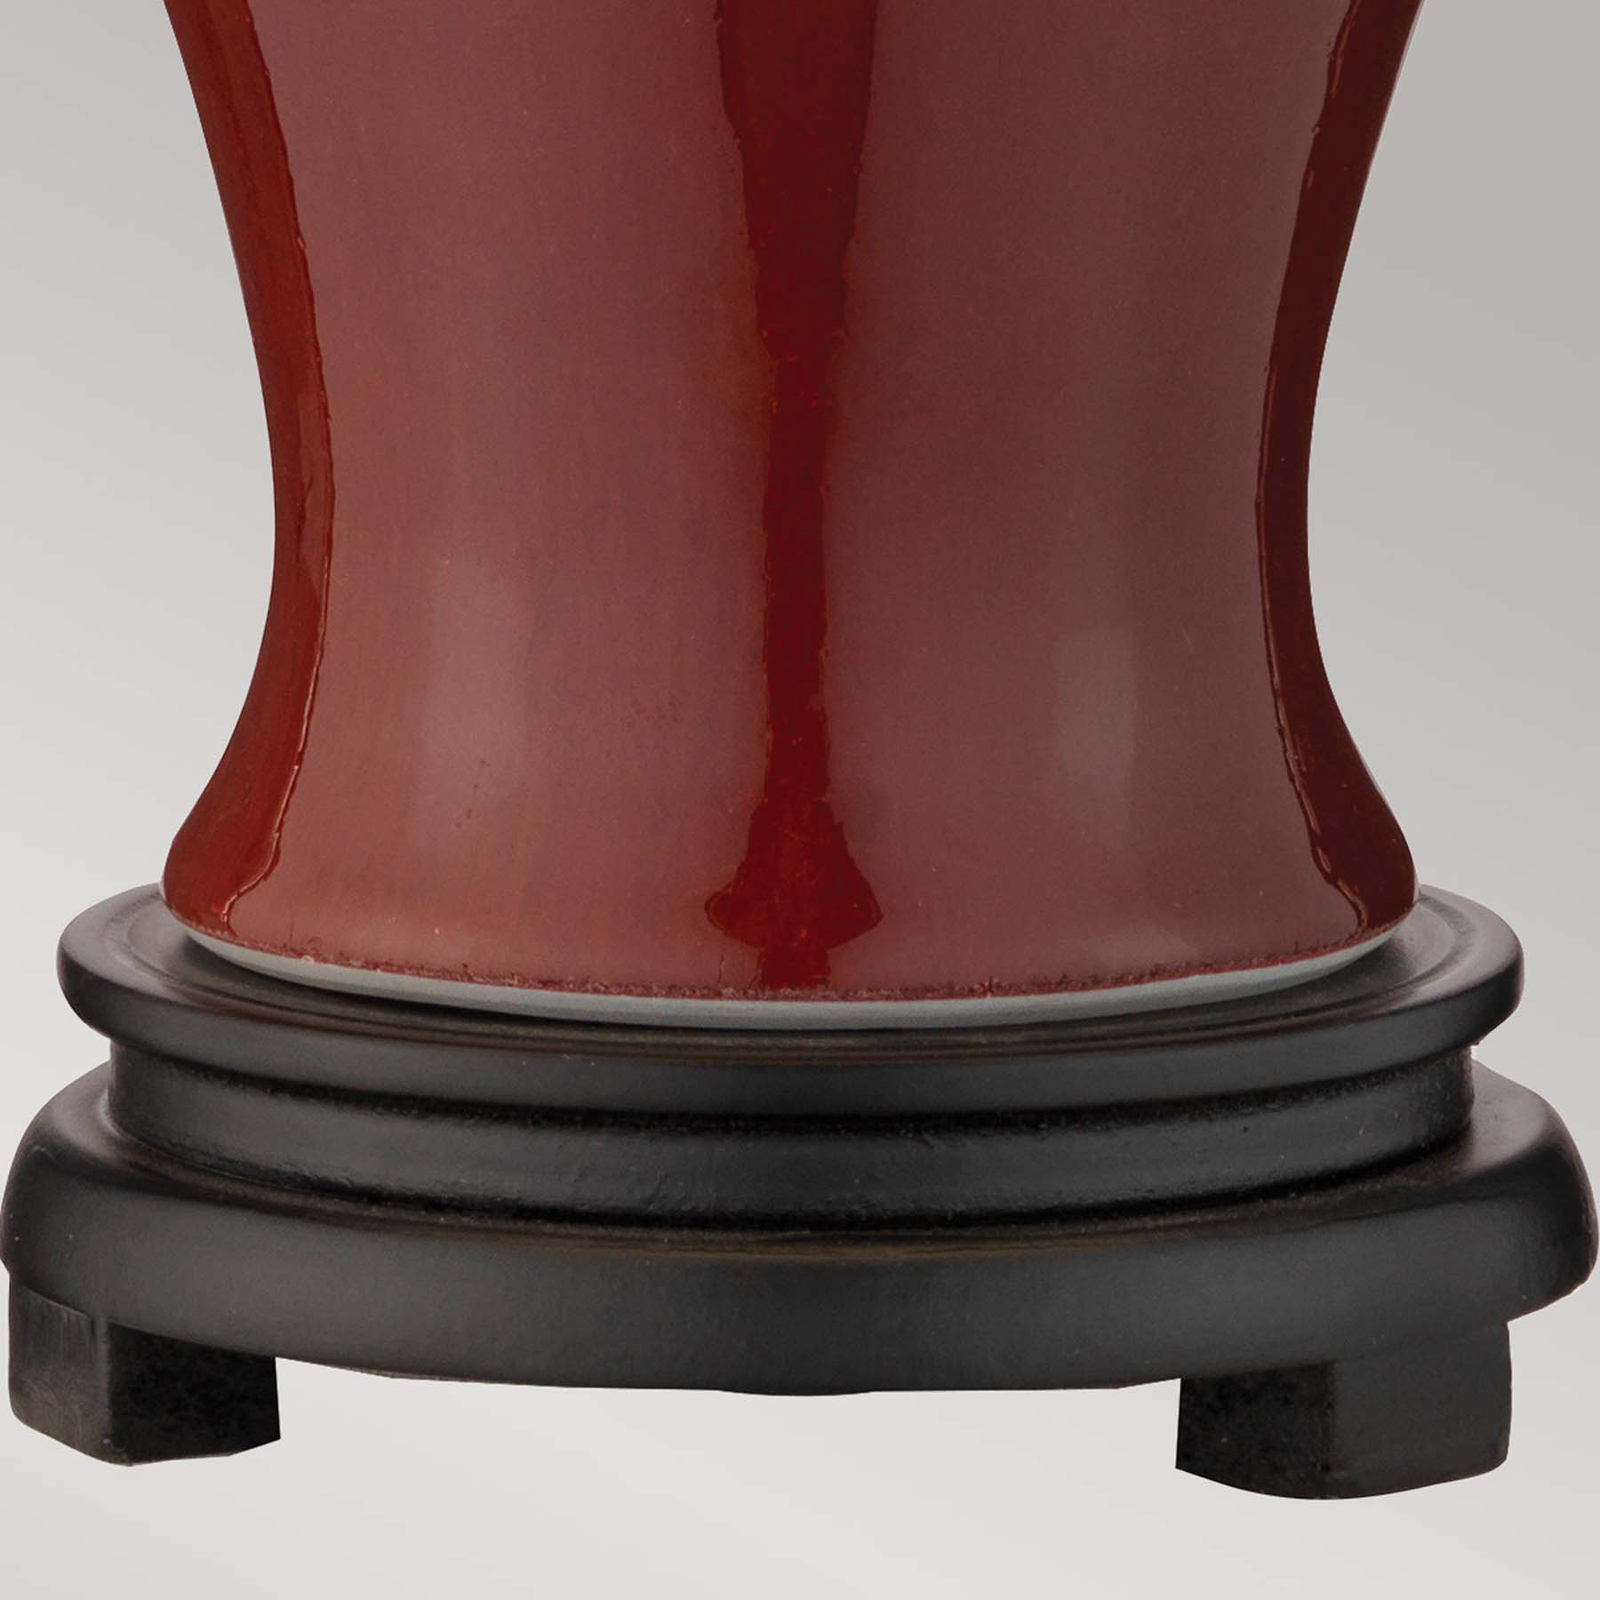 Majin Lampă de masă mică cu bază din ceramică roșie